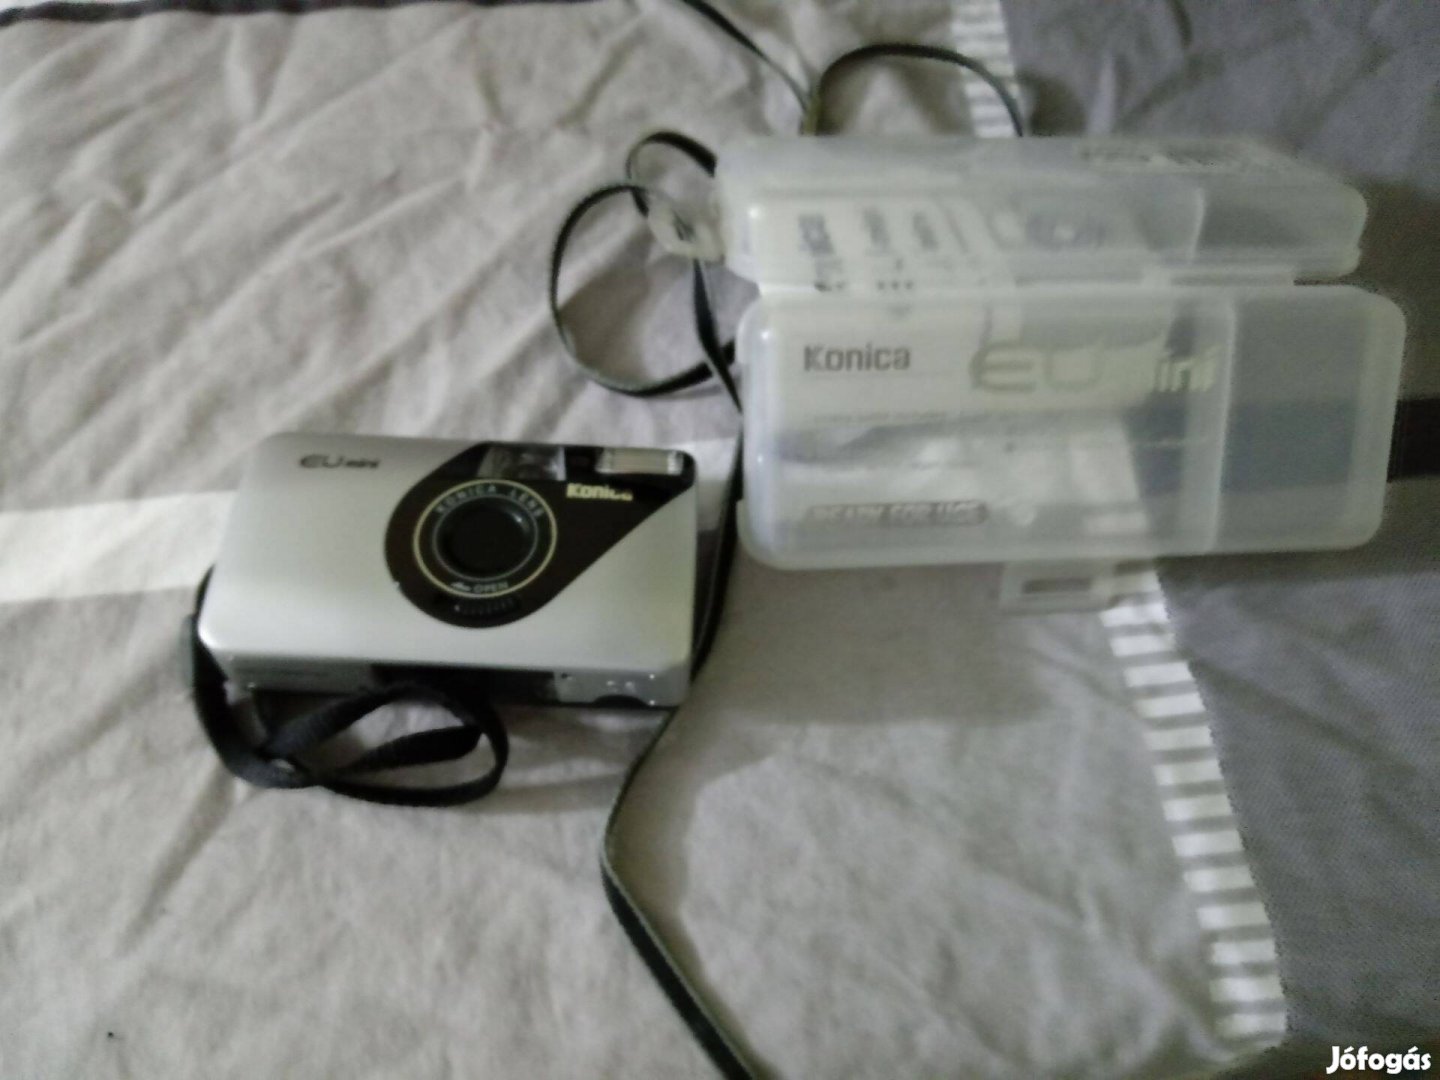 Konica mini filmes fényképezőgép, automata motoros, maradandó emlékekh